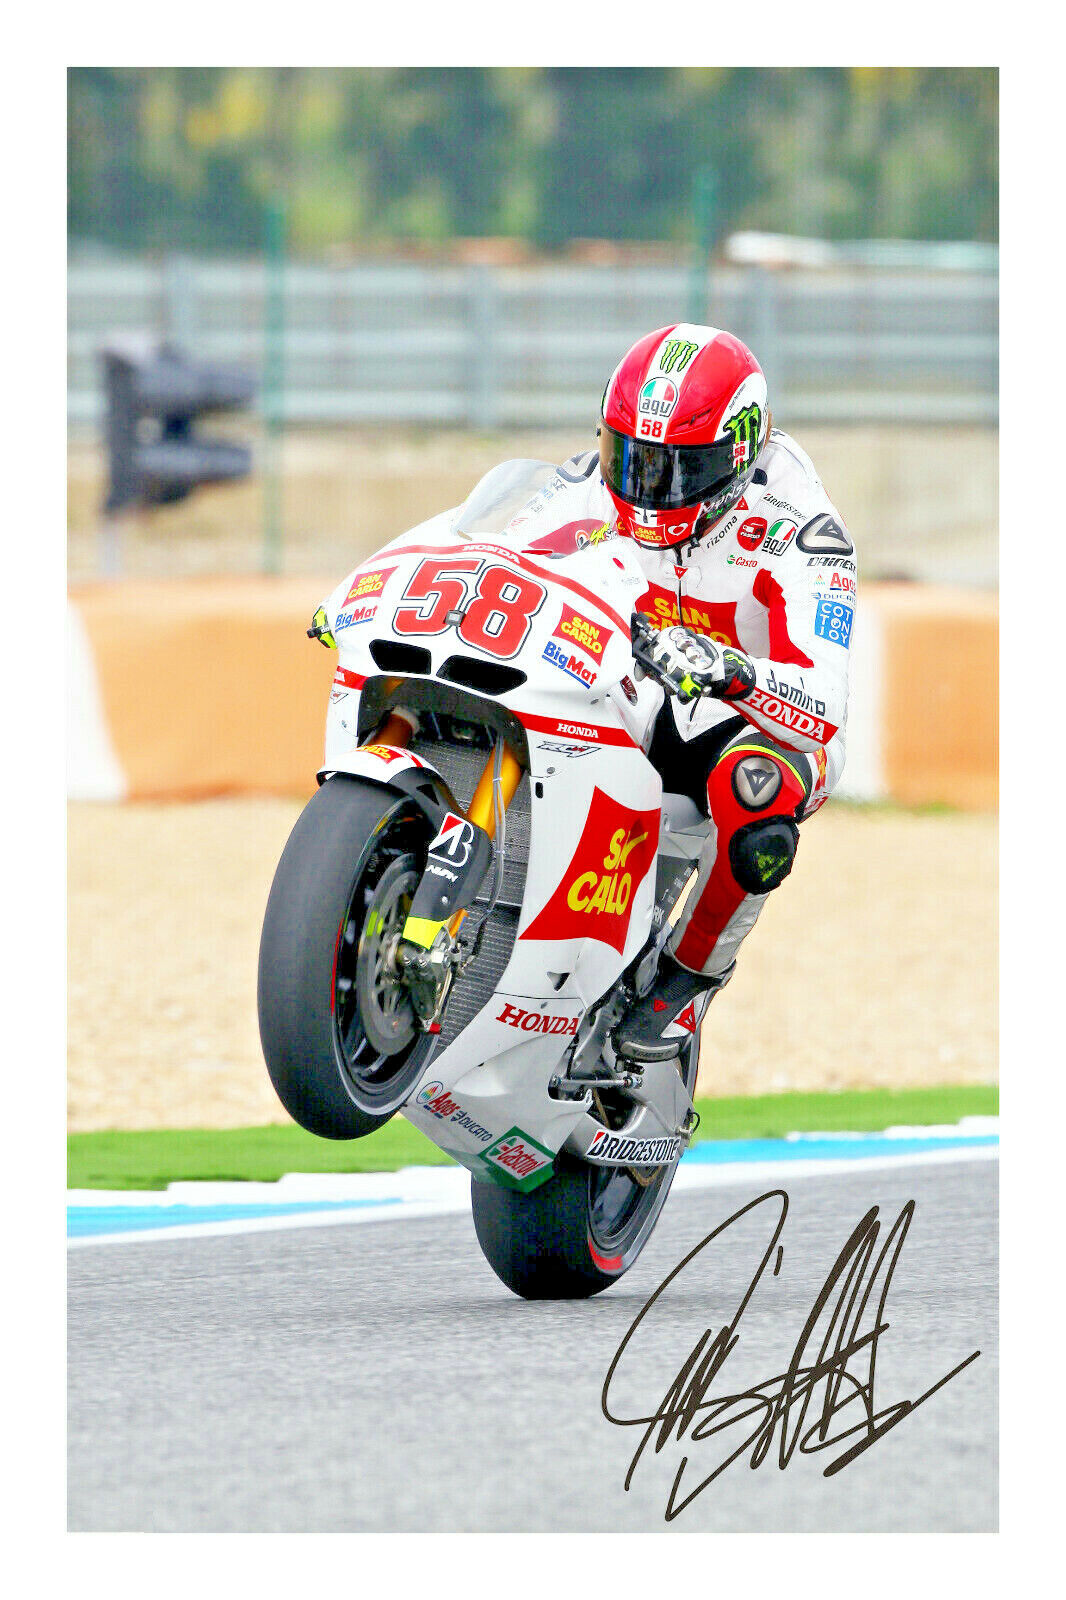 Marco Simoncelli Signed Autograph Photo Print MotoGP Poster Photograph